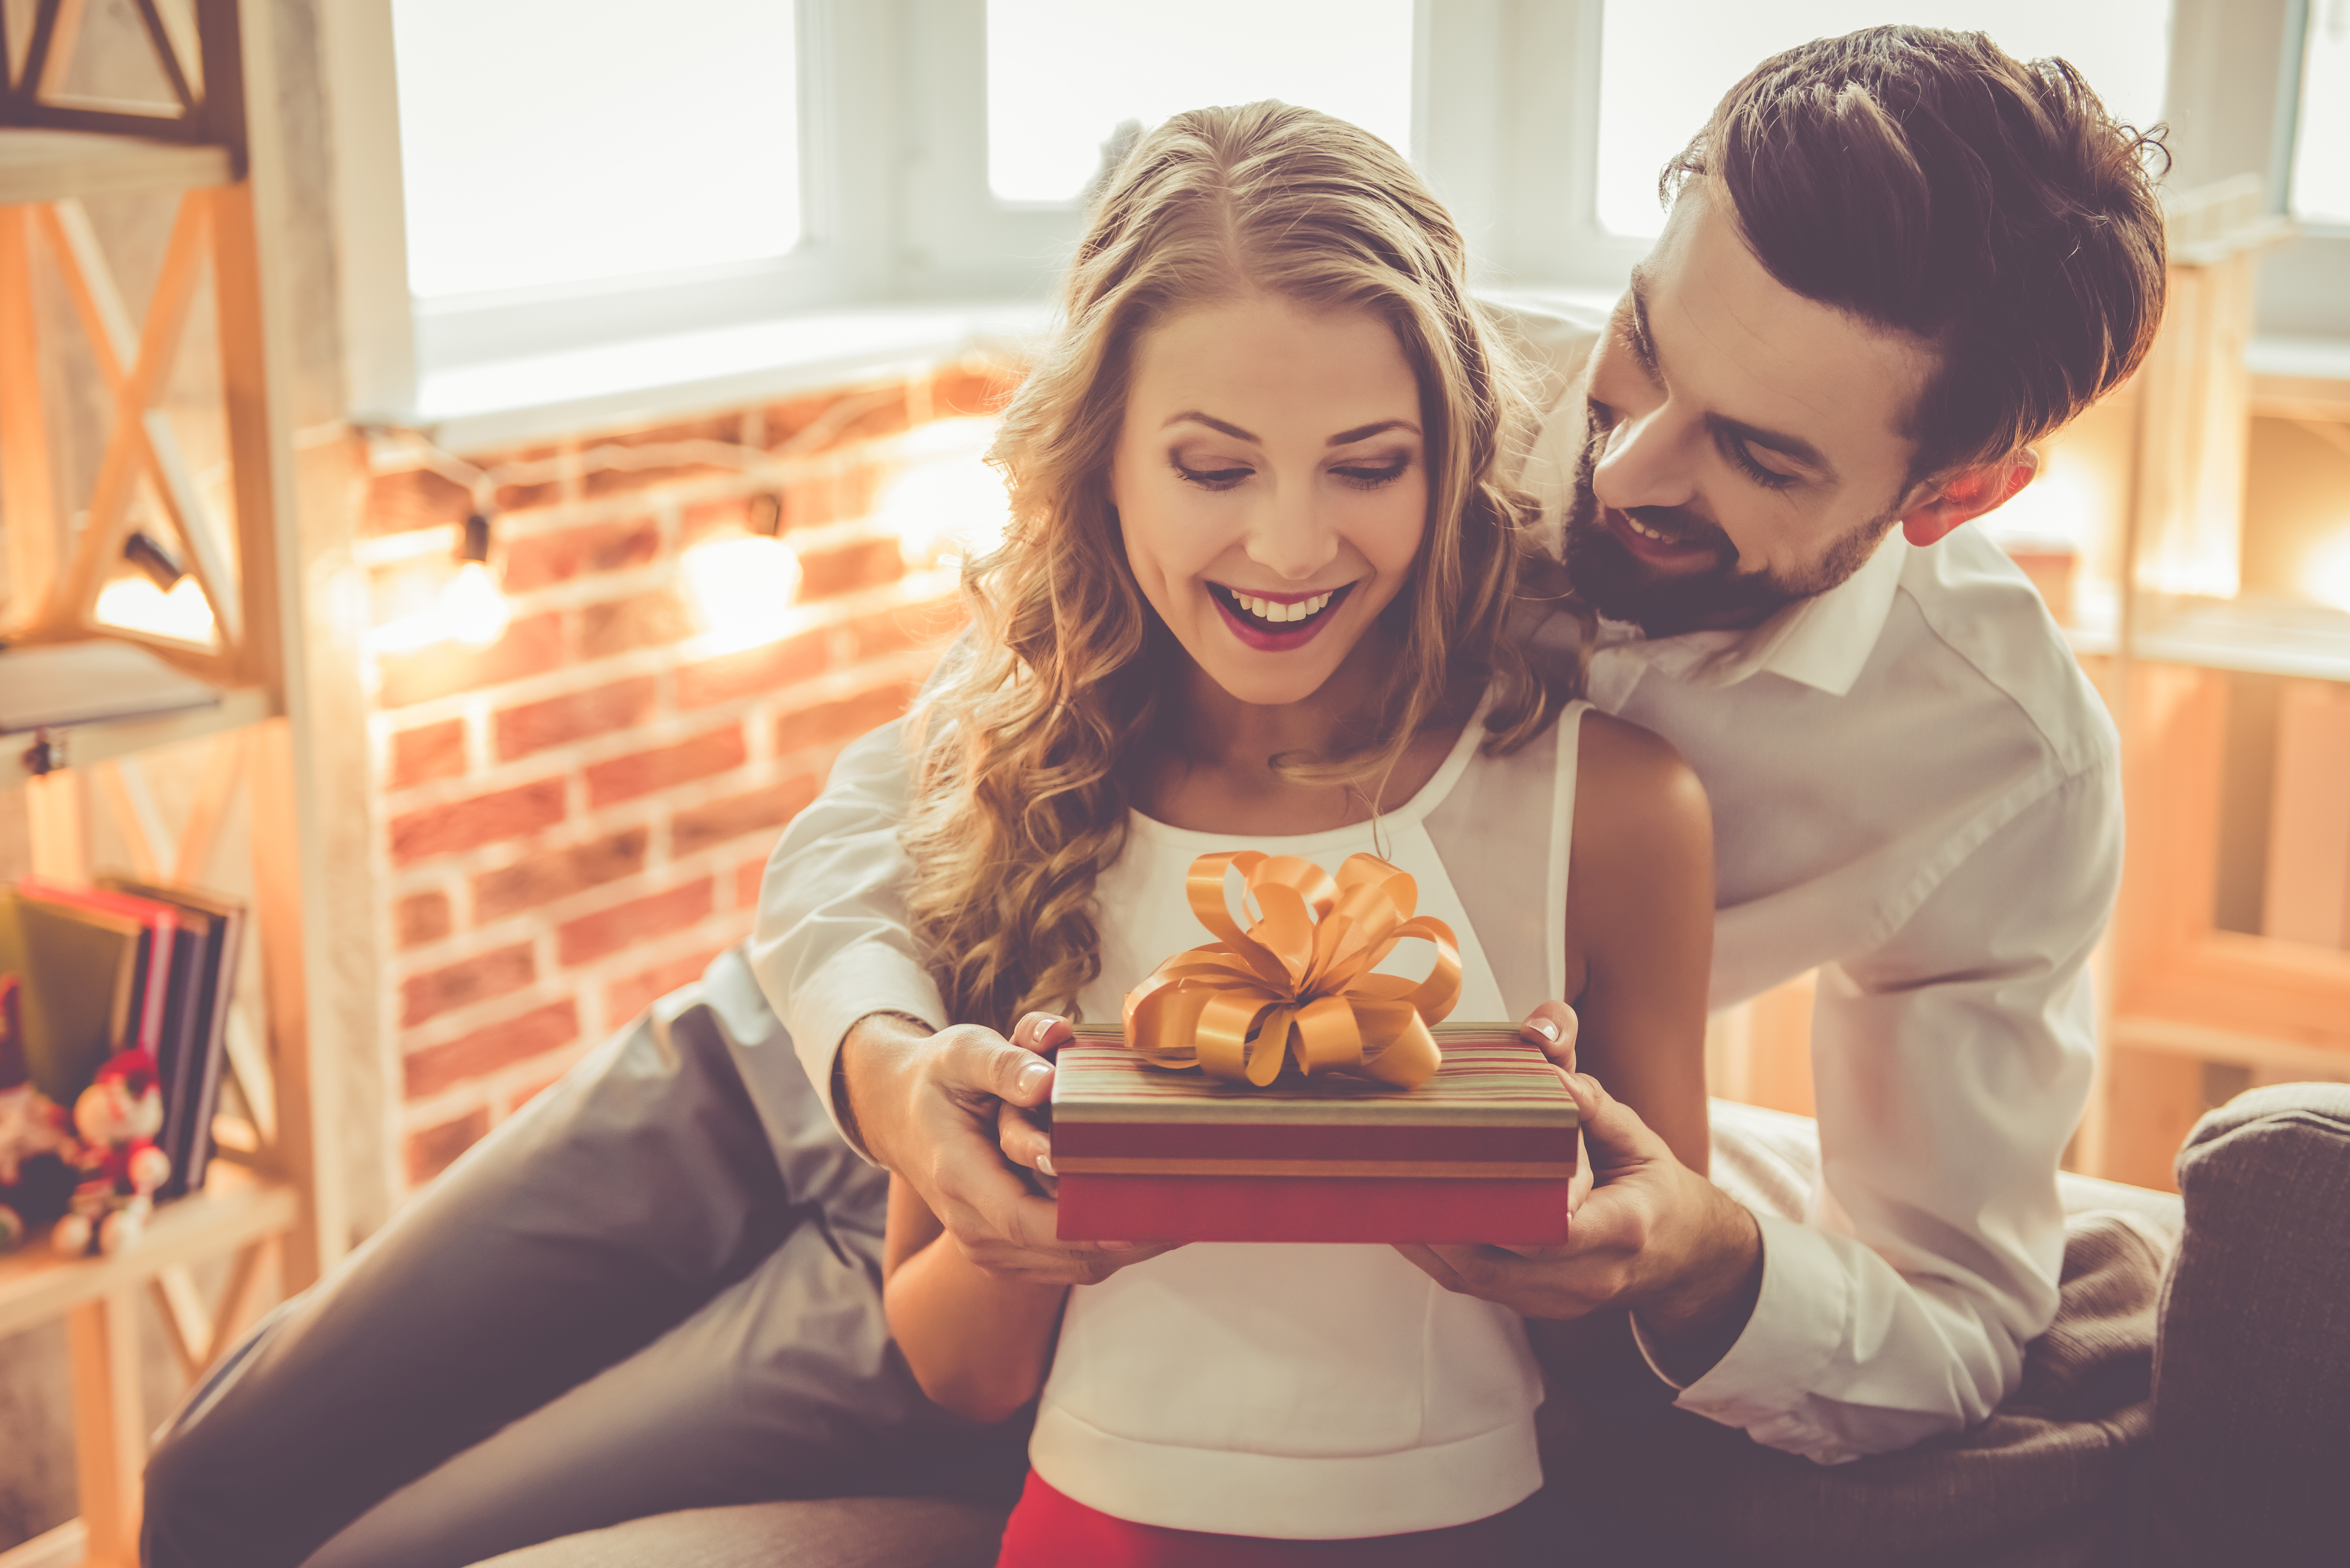 Ein junger Mann schenkt seiner Freundin eine Geschenkbox | Quelle: Shutterstock